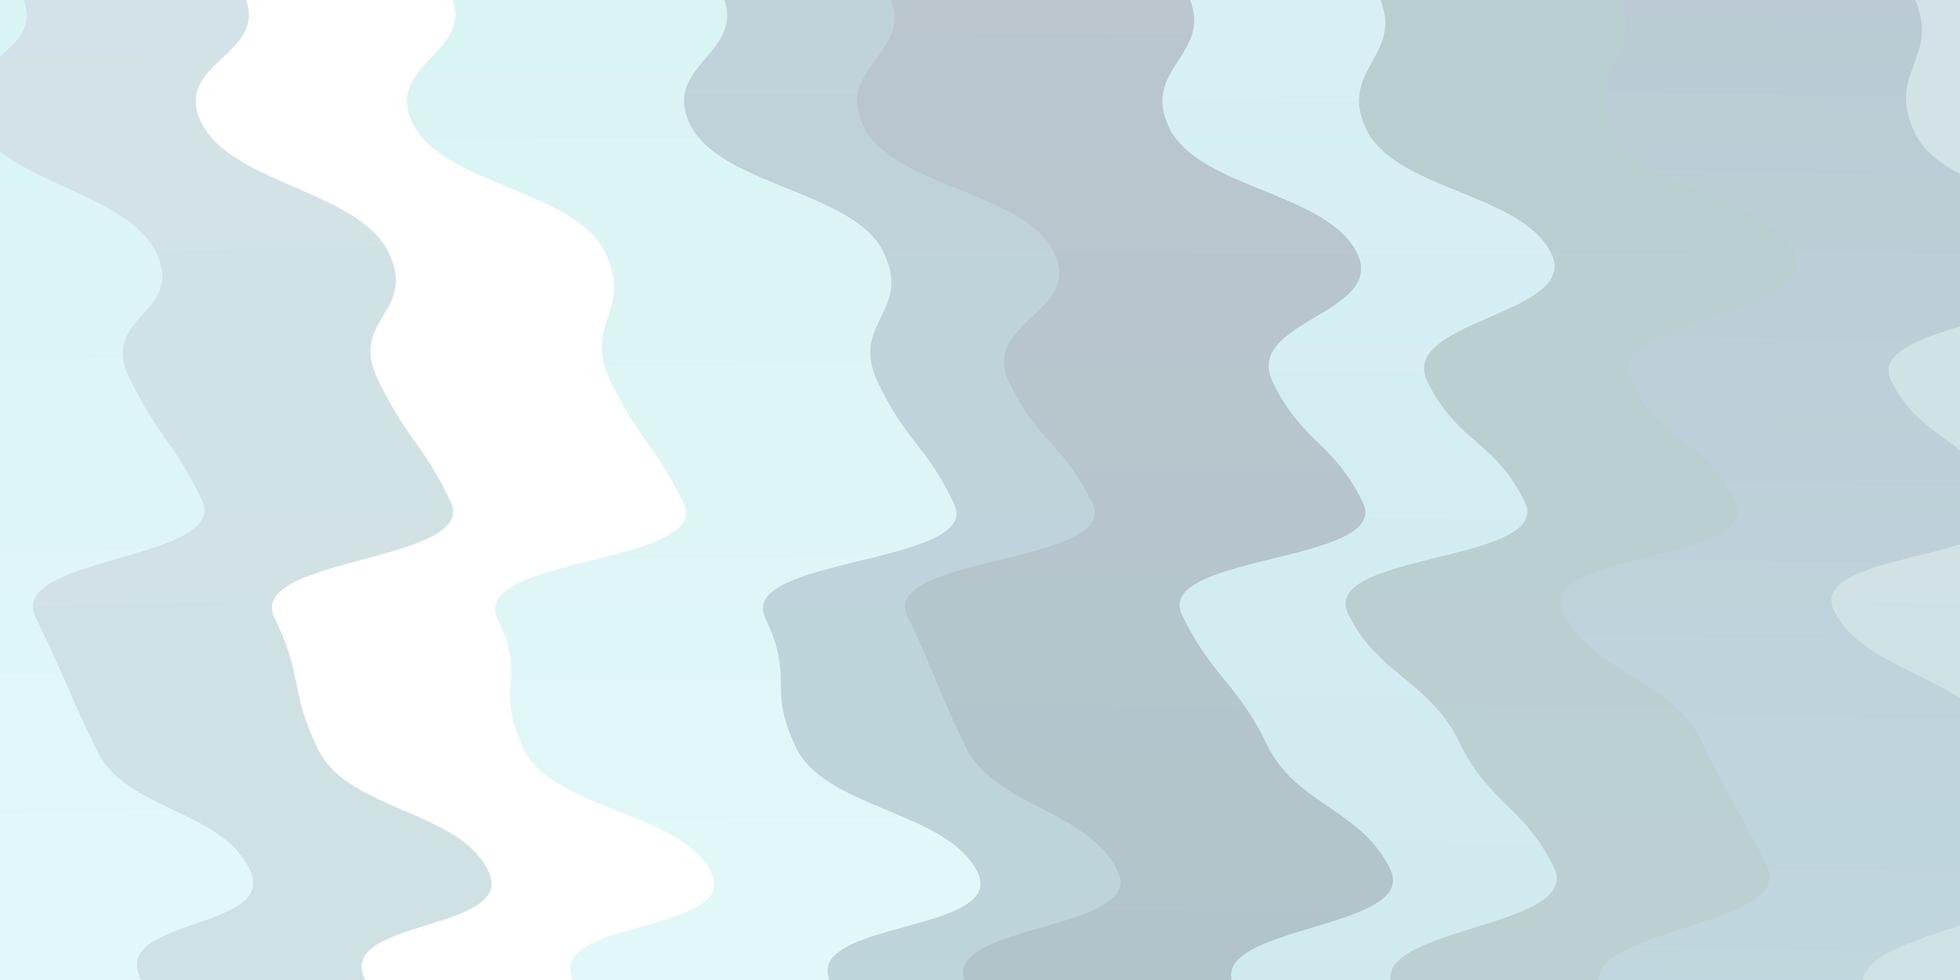 texture vecteur bleu clair avec des lignes tordues. illustration abstraite de dégradé avec des lignes tordues. conception pour la promotion de votre entreprise.